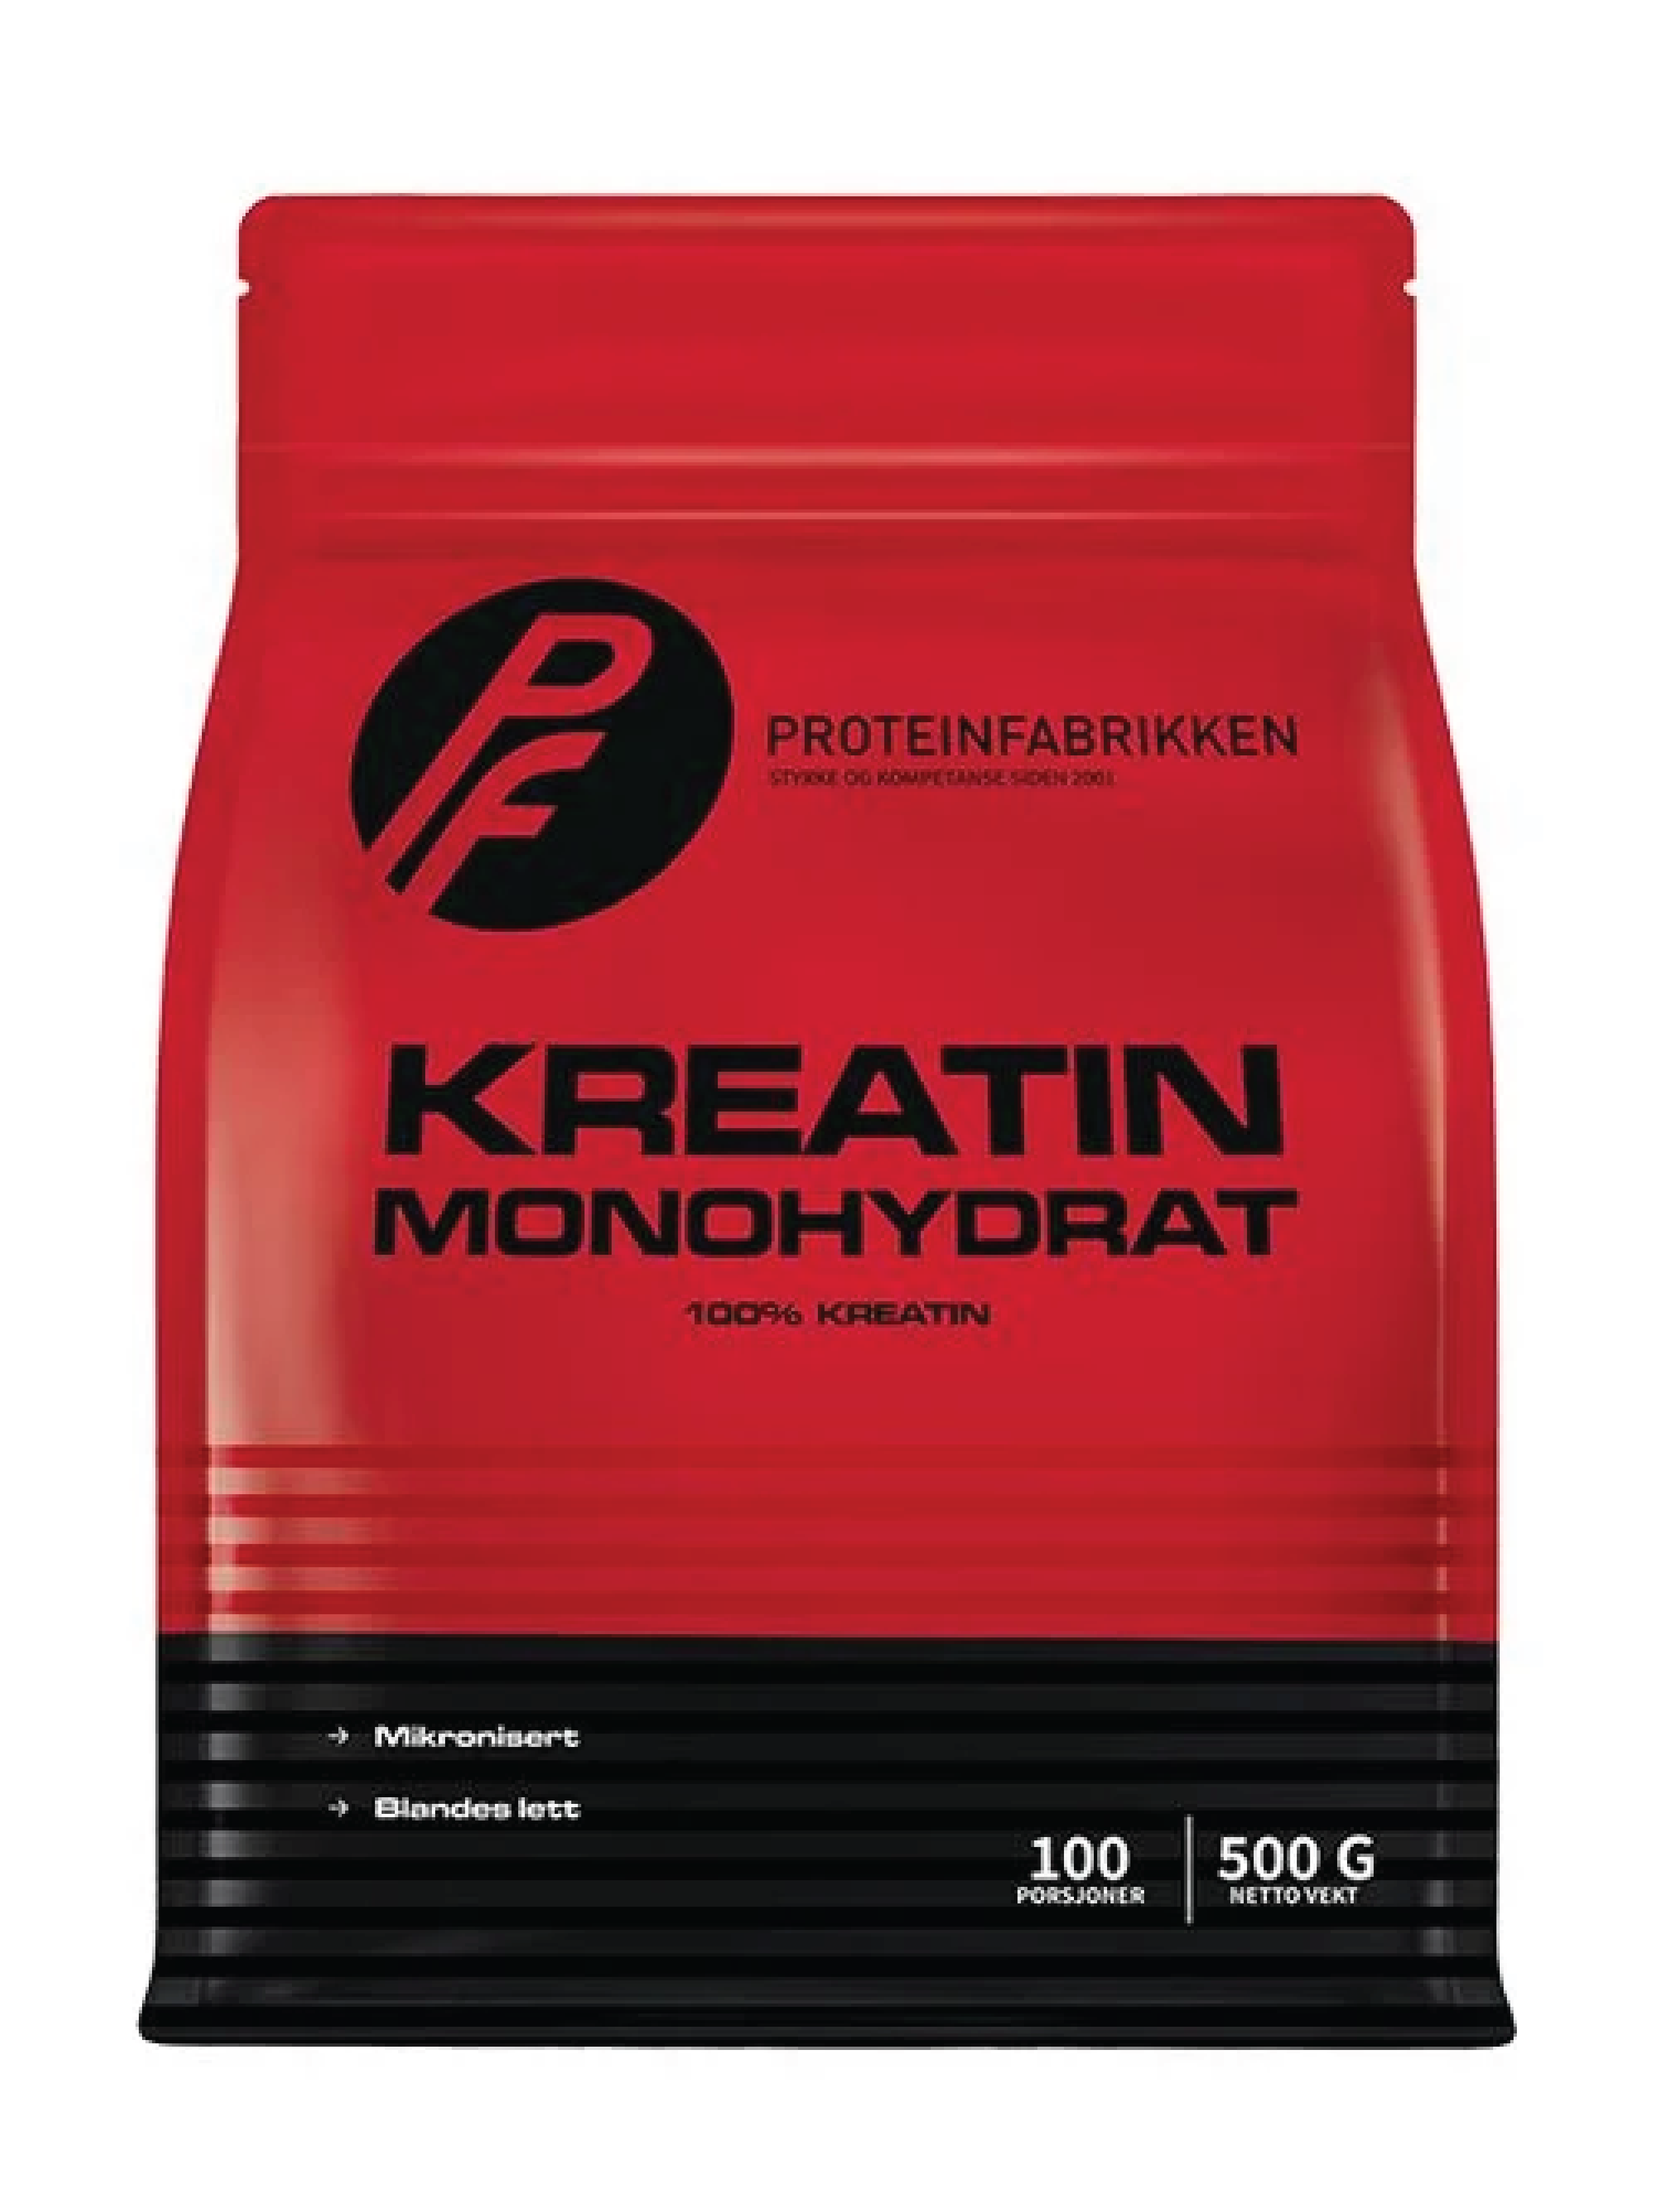 Proteinfabrikken Creatine Monohydrat, 500 g